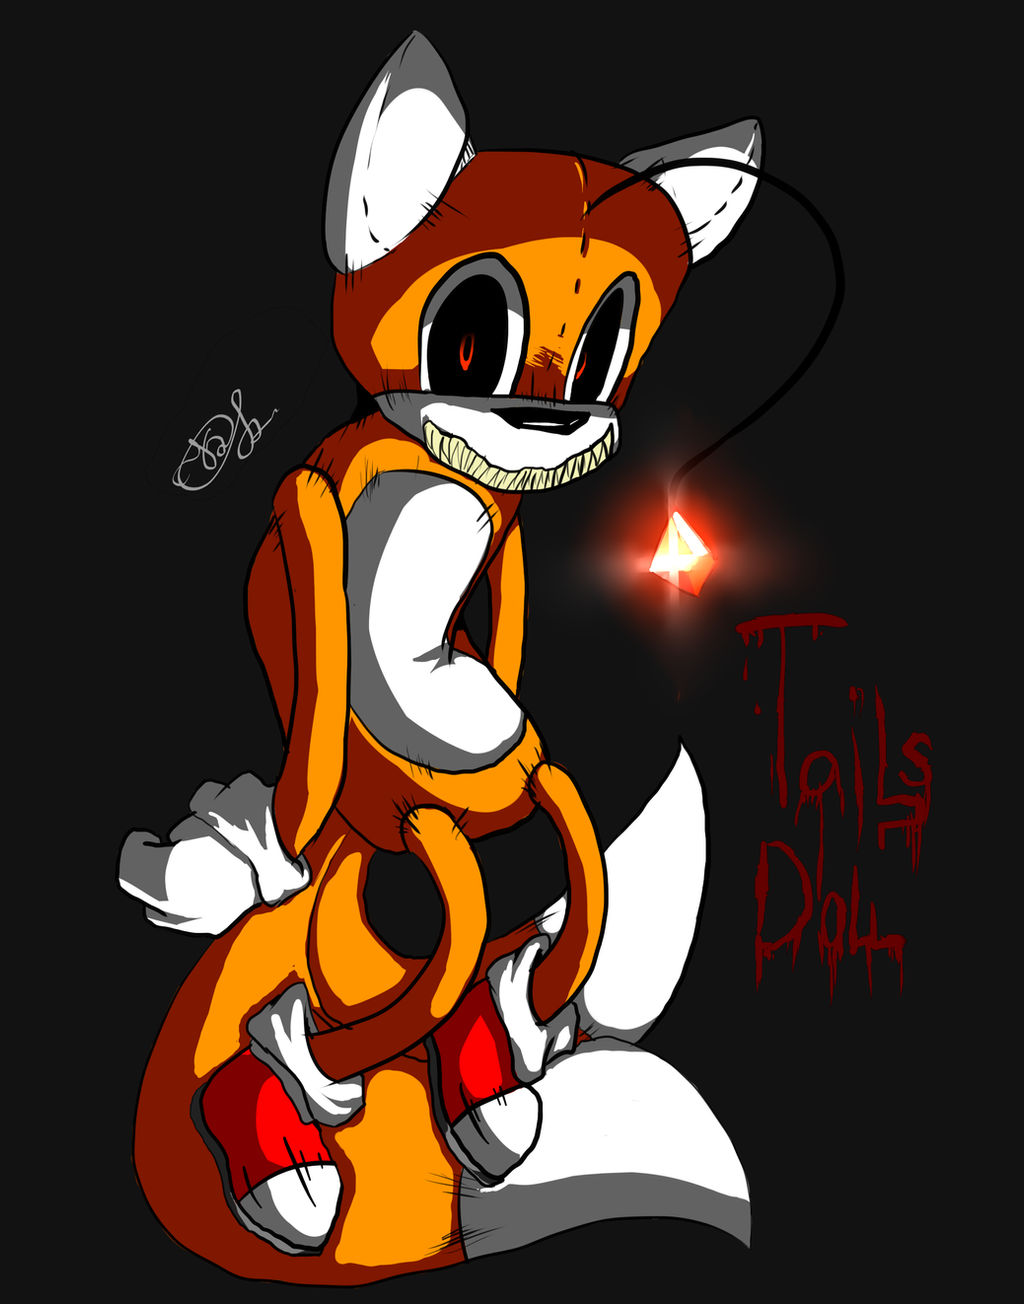 Tails Doll fan art by kitCATSTUDIO on DeviantArt